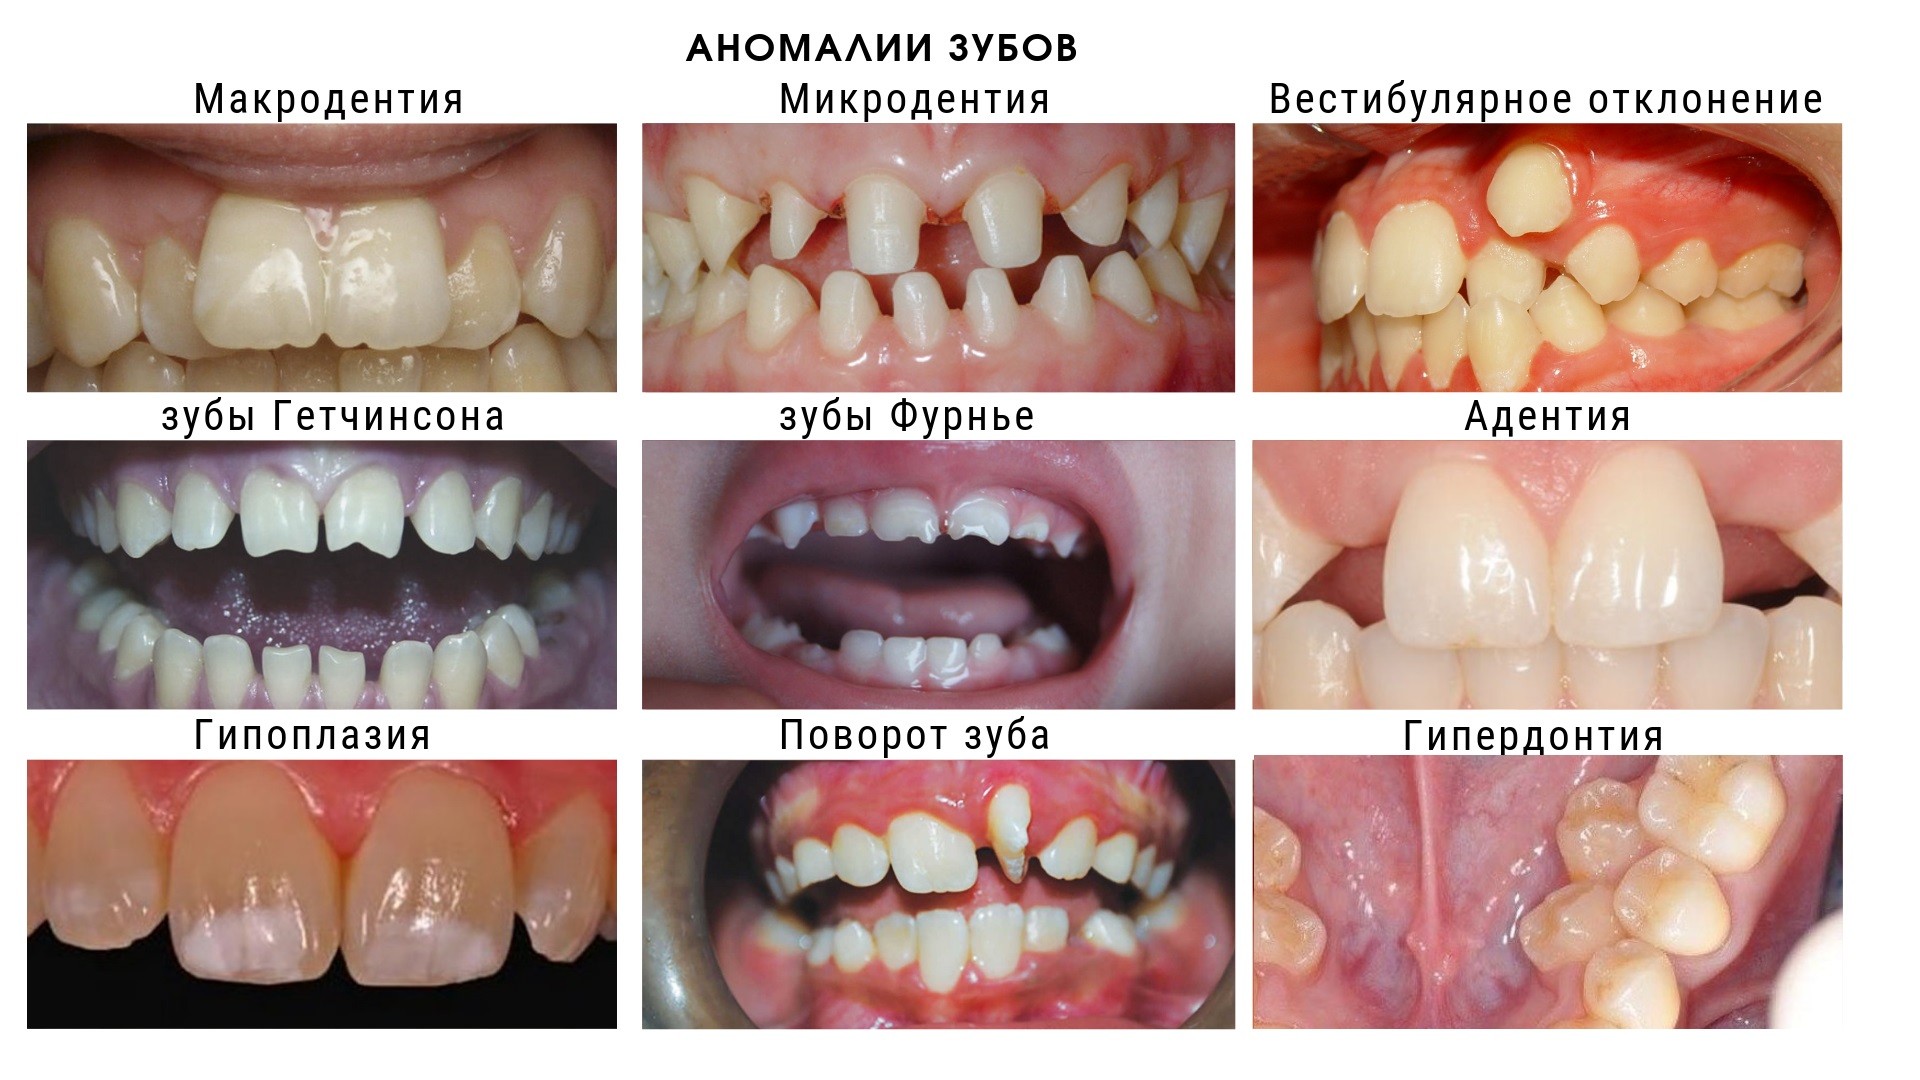 Наиболее частые виды аномалии зубов